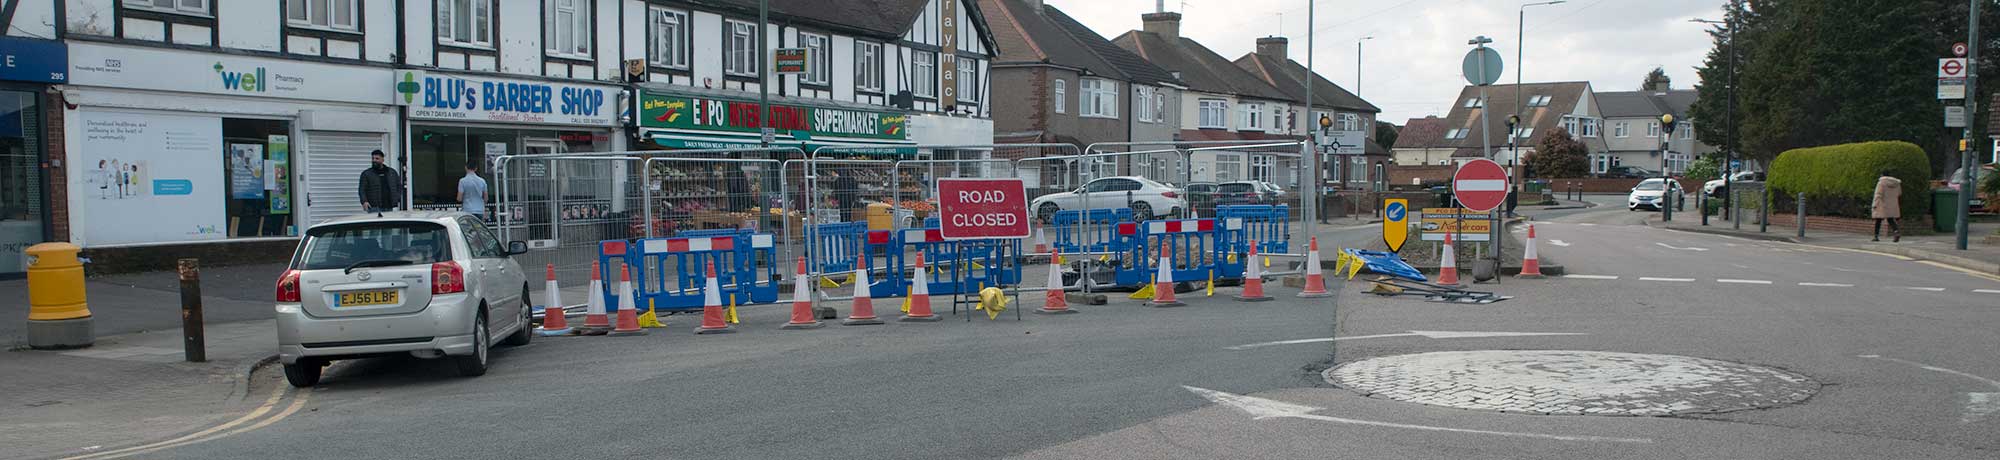 Brampton Road closed